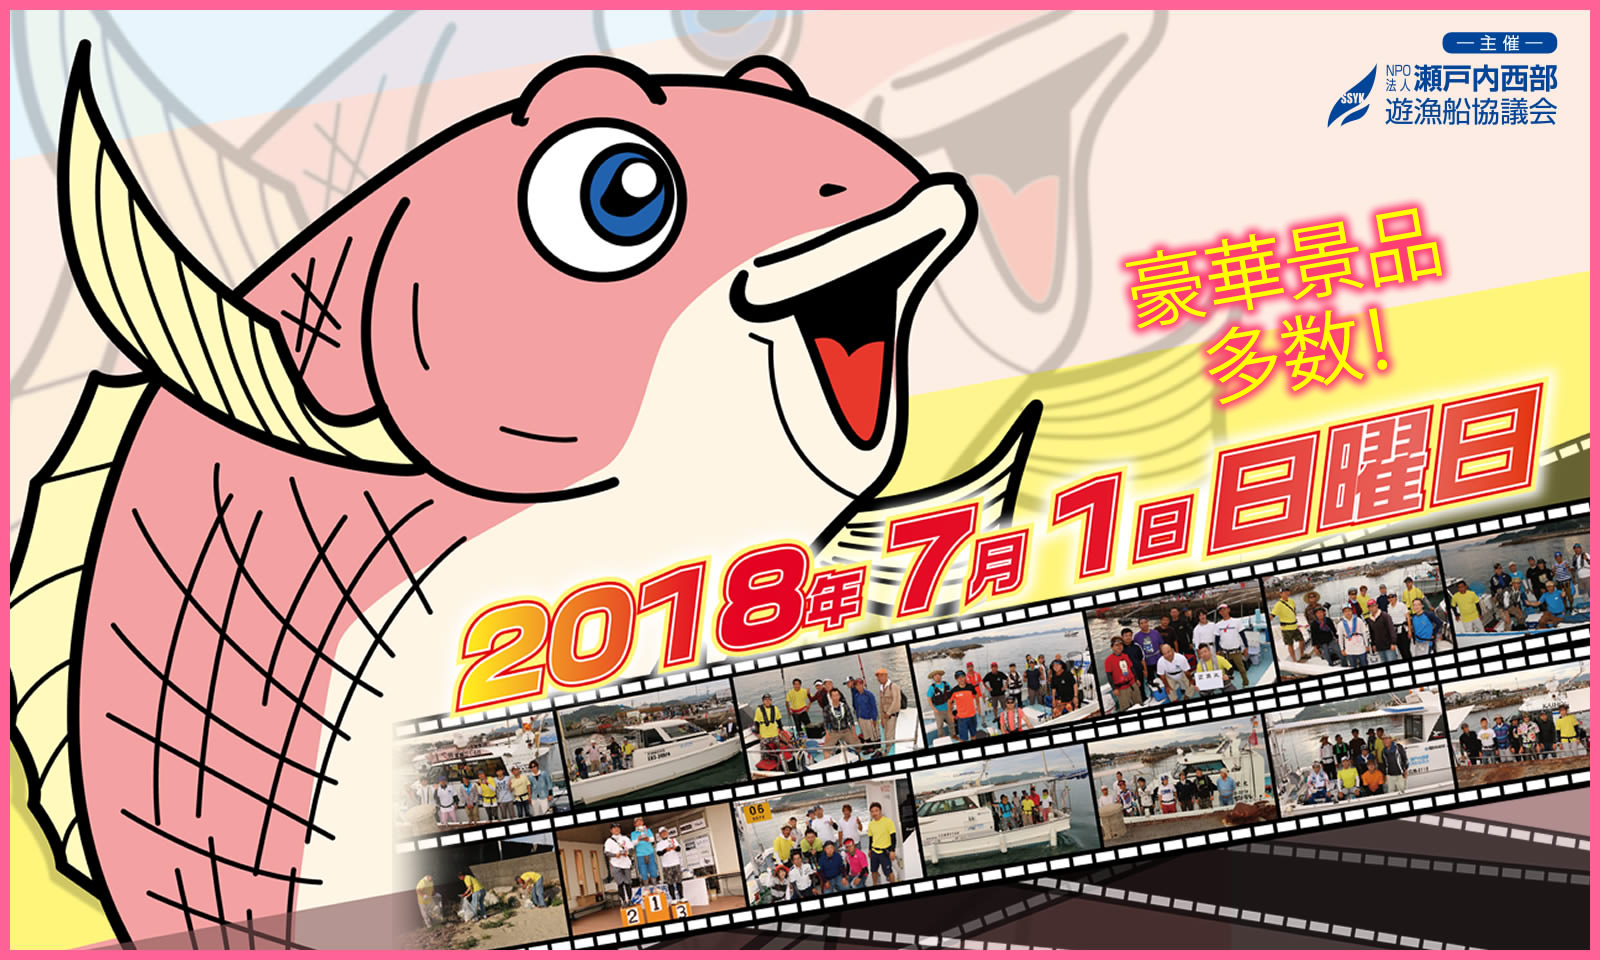 第2回タイラバ大会　主催:瀬戸内西部遊漁船協議会
2018年7月1日日曜日
豪華景品多数！